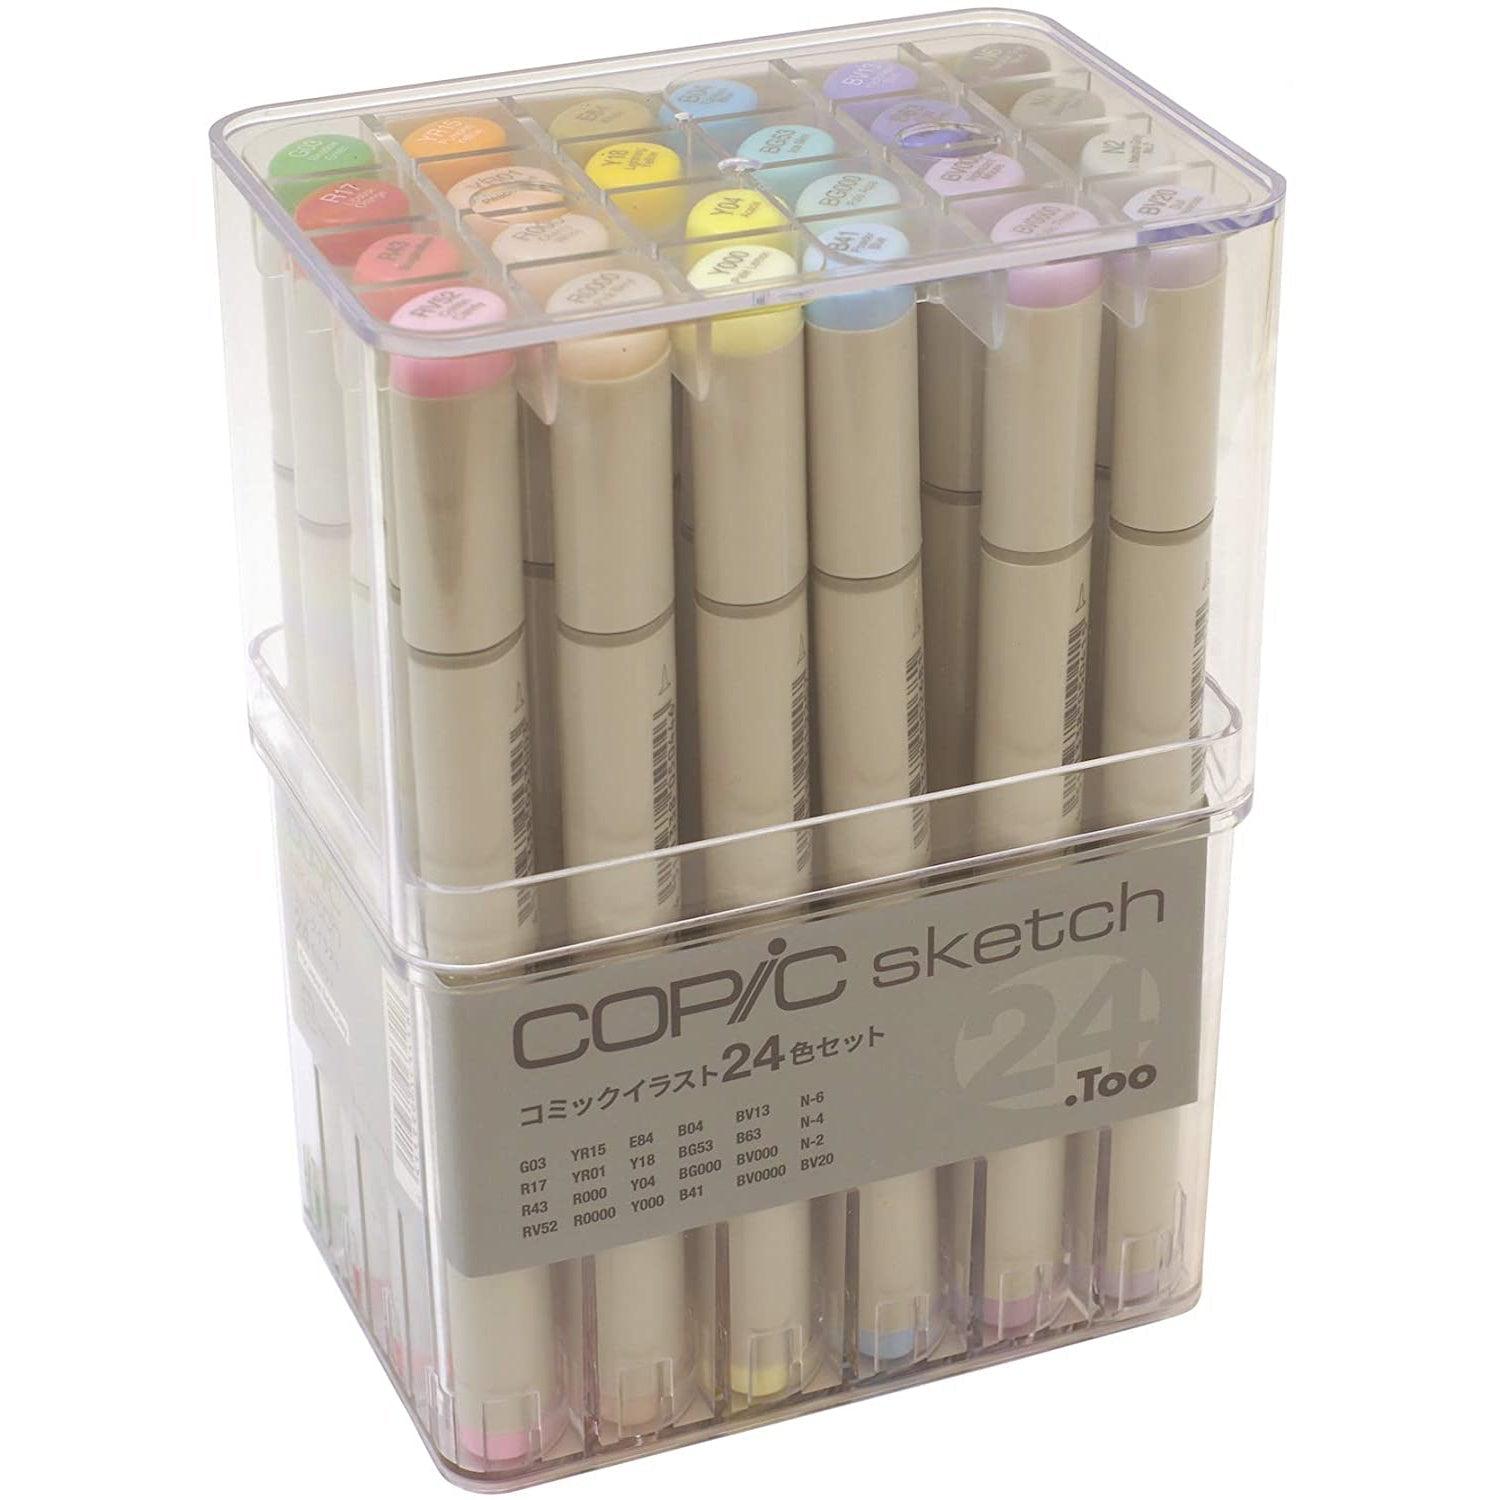 https://japanesetaste.com/cdn/shop/products/Copic-Sketch-Marker-Set-24-Colors-Japanese-Taste.jpg?v=1677552965&width=5760